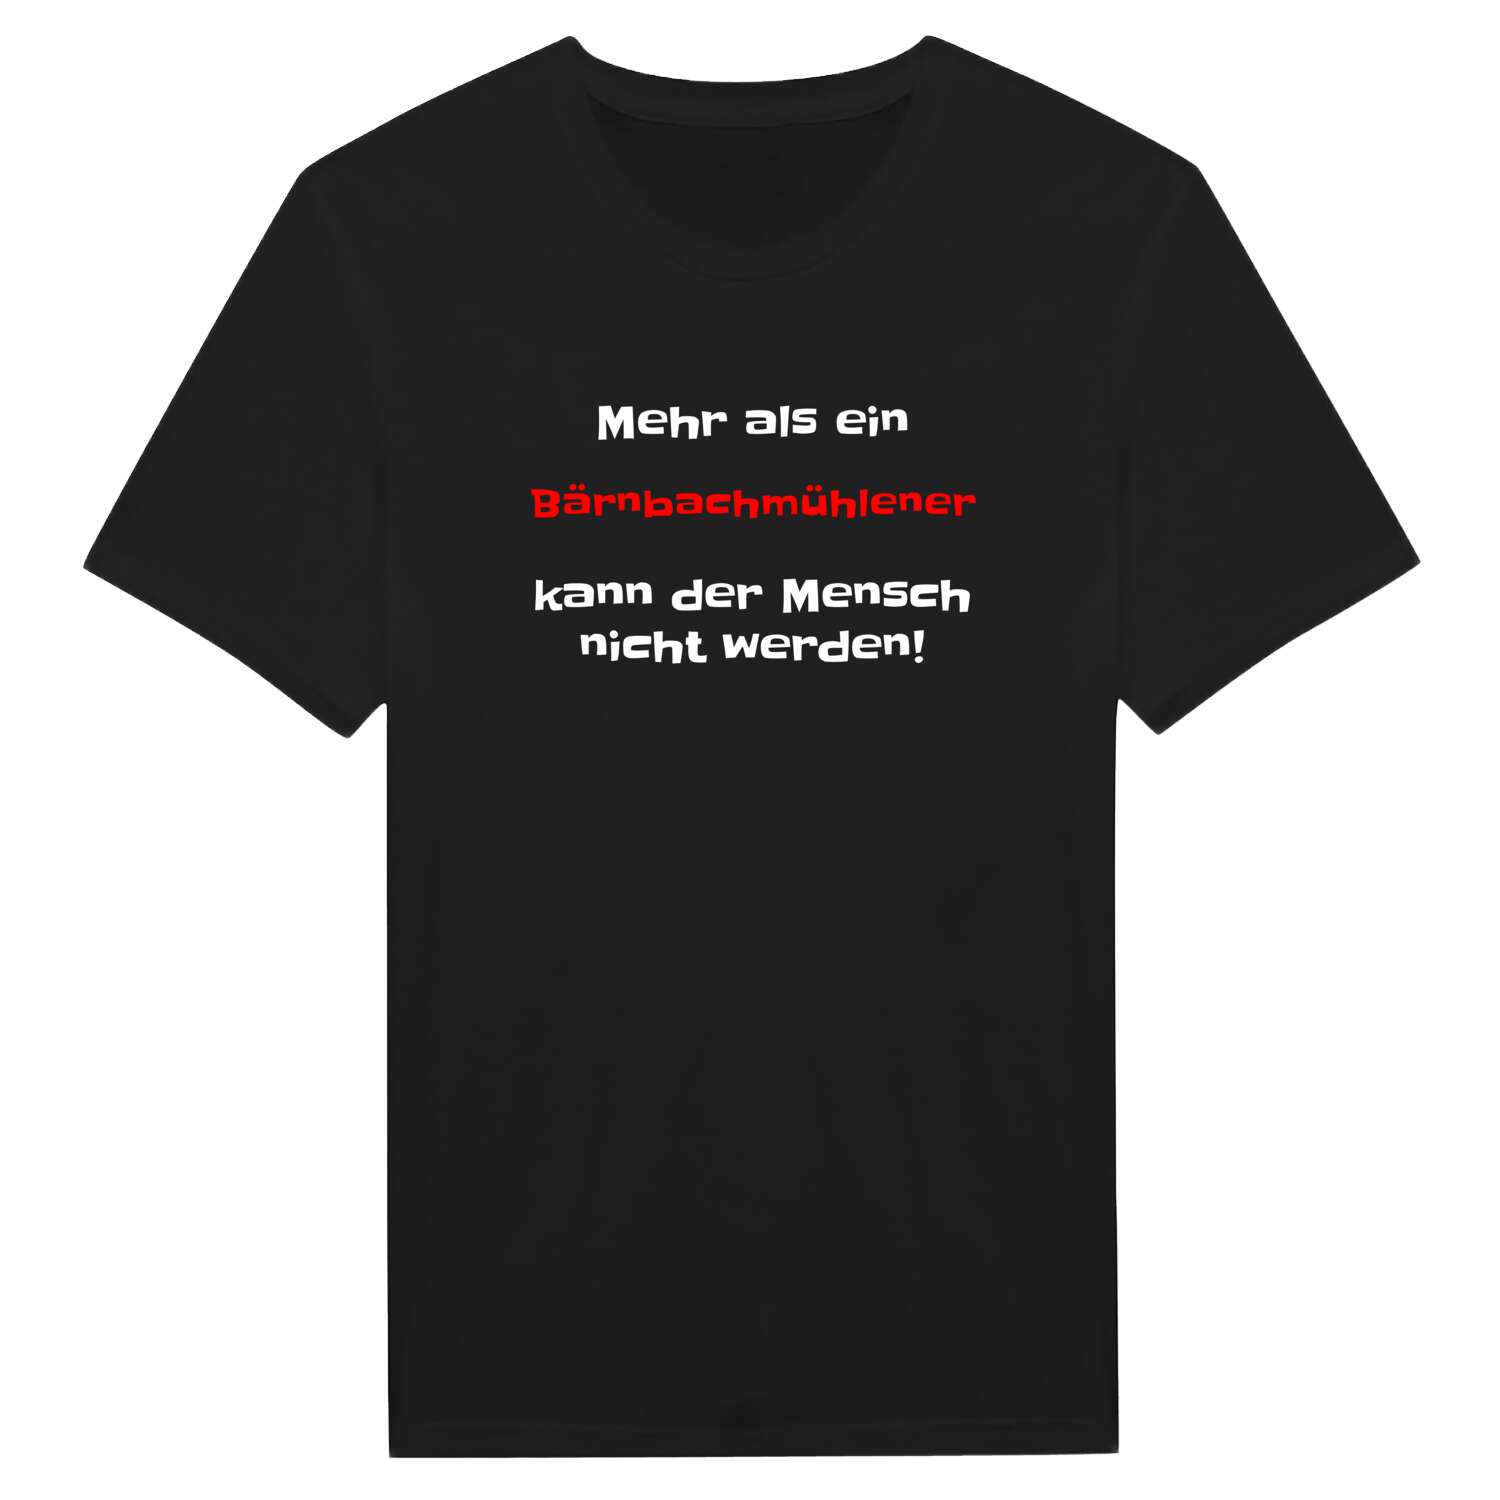 Bärnbachmühle T-Shirt »Mehr als ein«